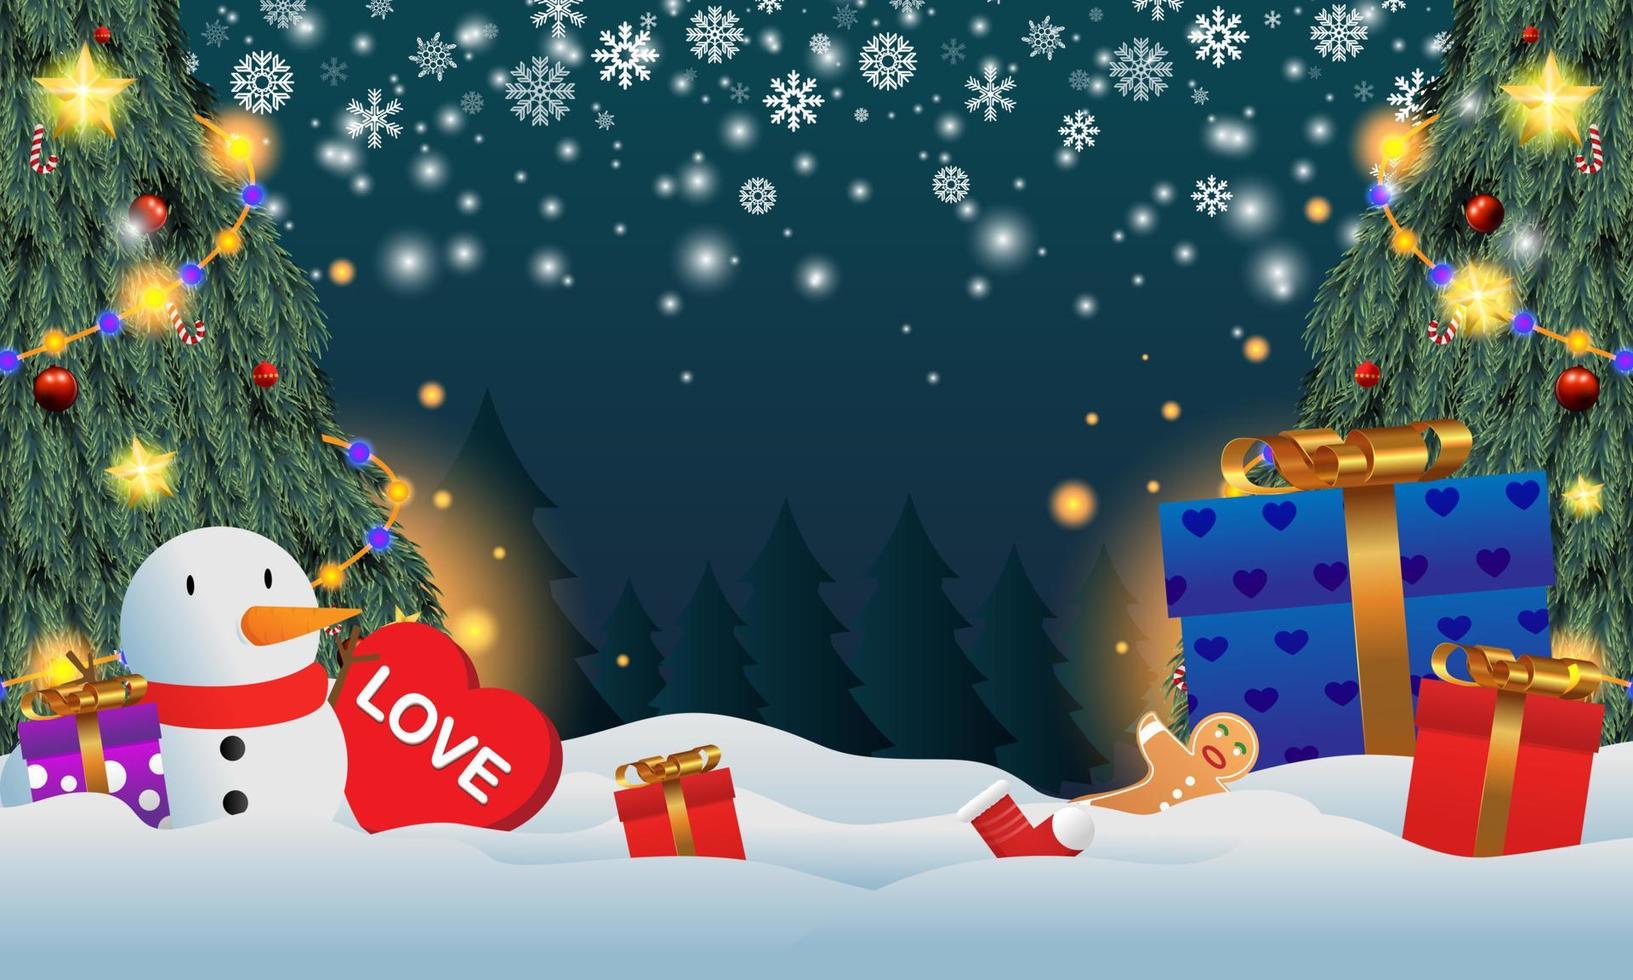 regalos colocados debajo del árbol de navidad. regalo de santa en la nieve. varios regalos como osos de peluche, cajas de regalo y dulces. vector